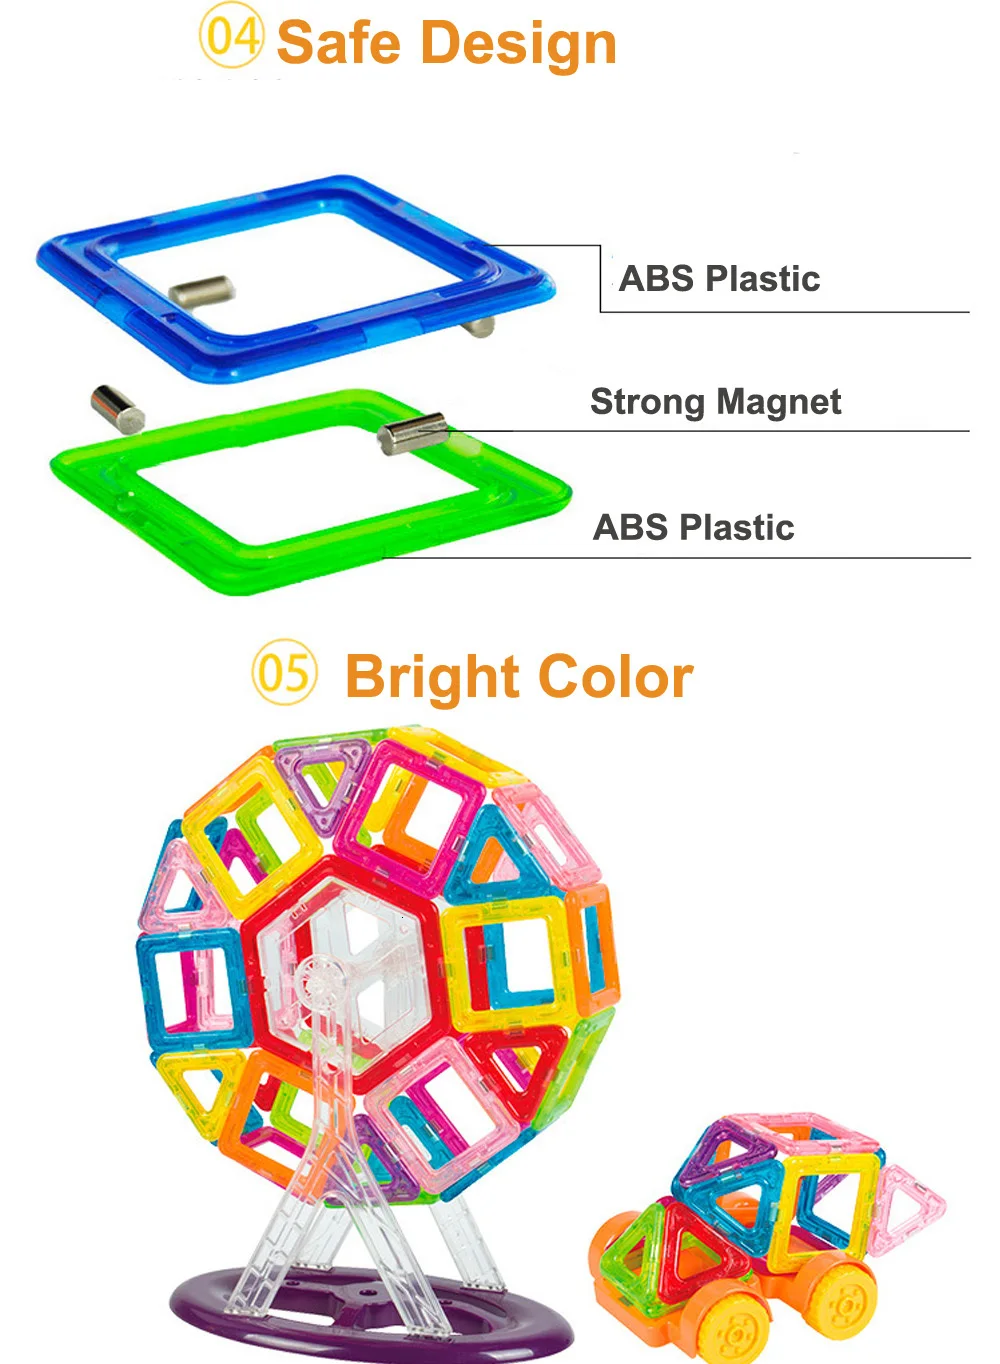 58-252 шт мини размер магнитные игрушки магнит строительные блоки конструктор Набор образовательных игрушек для детей подарок